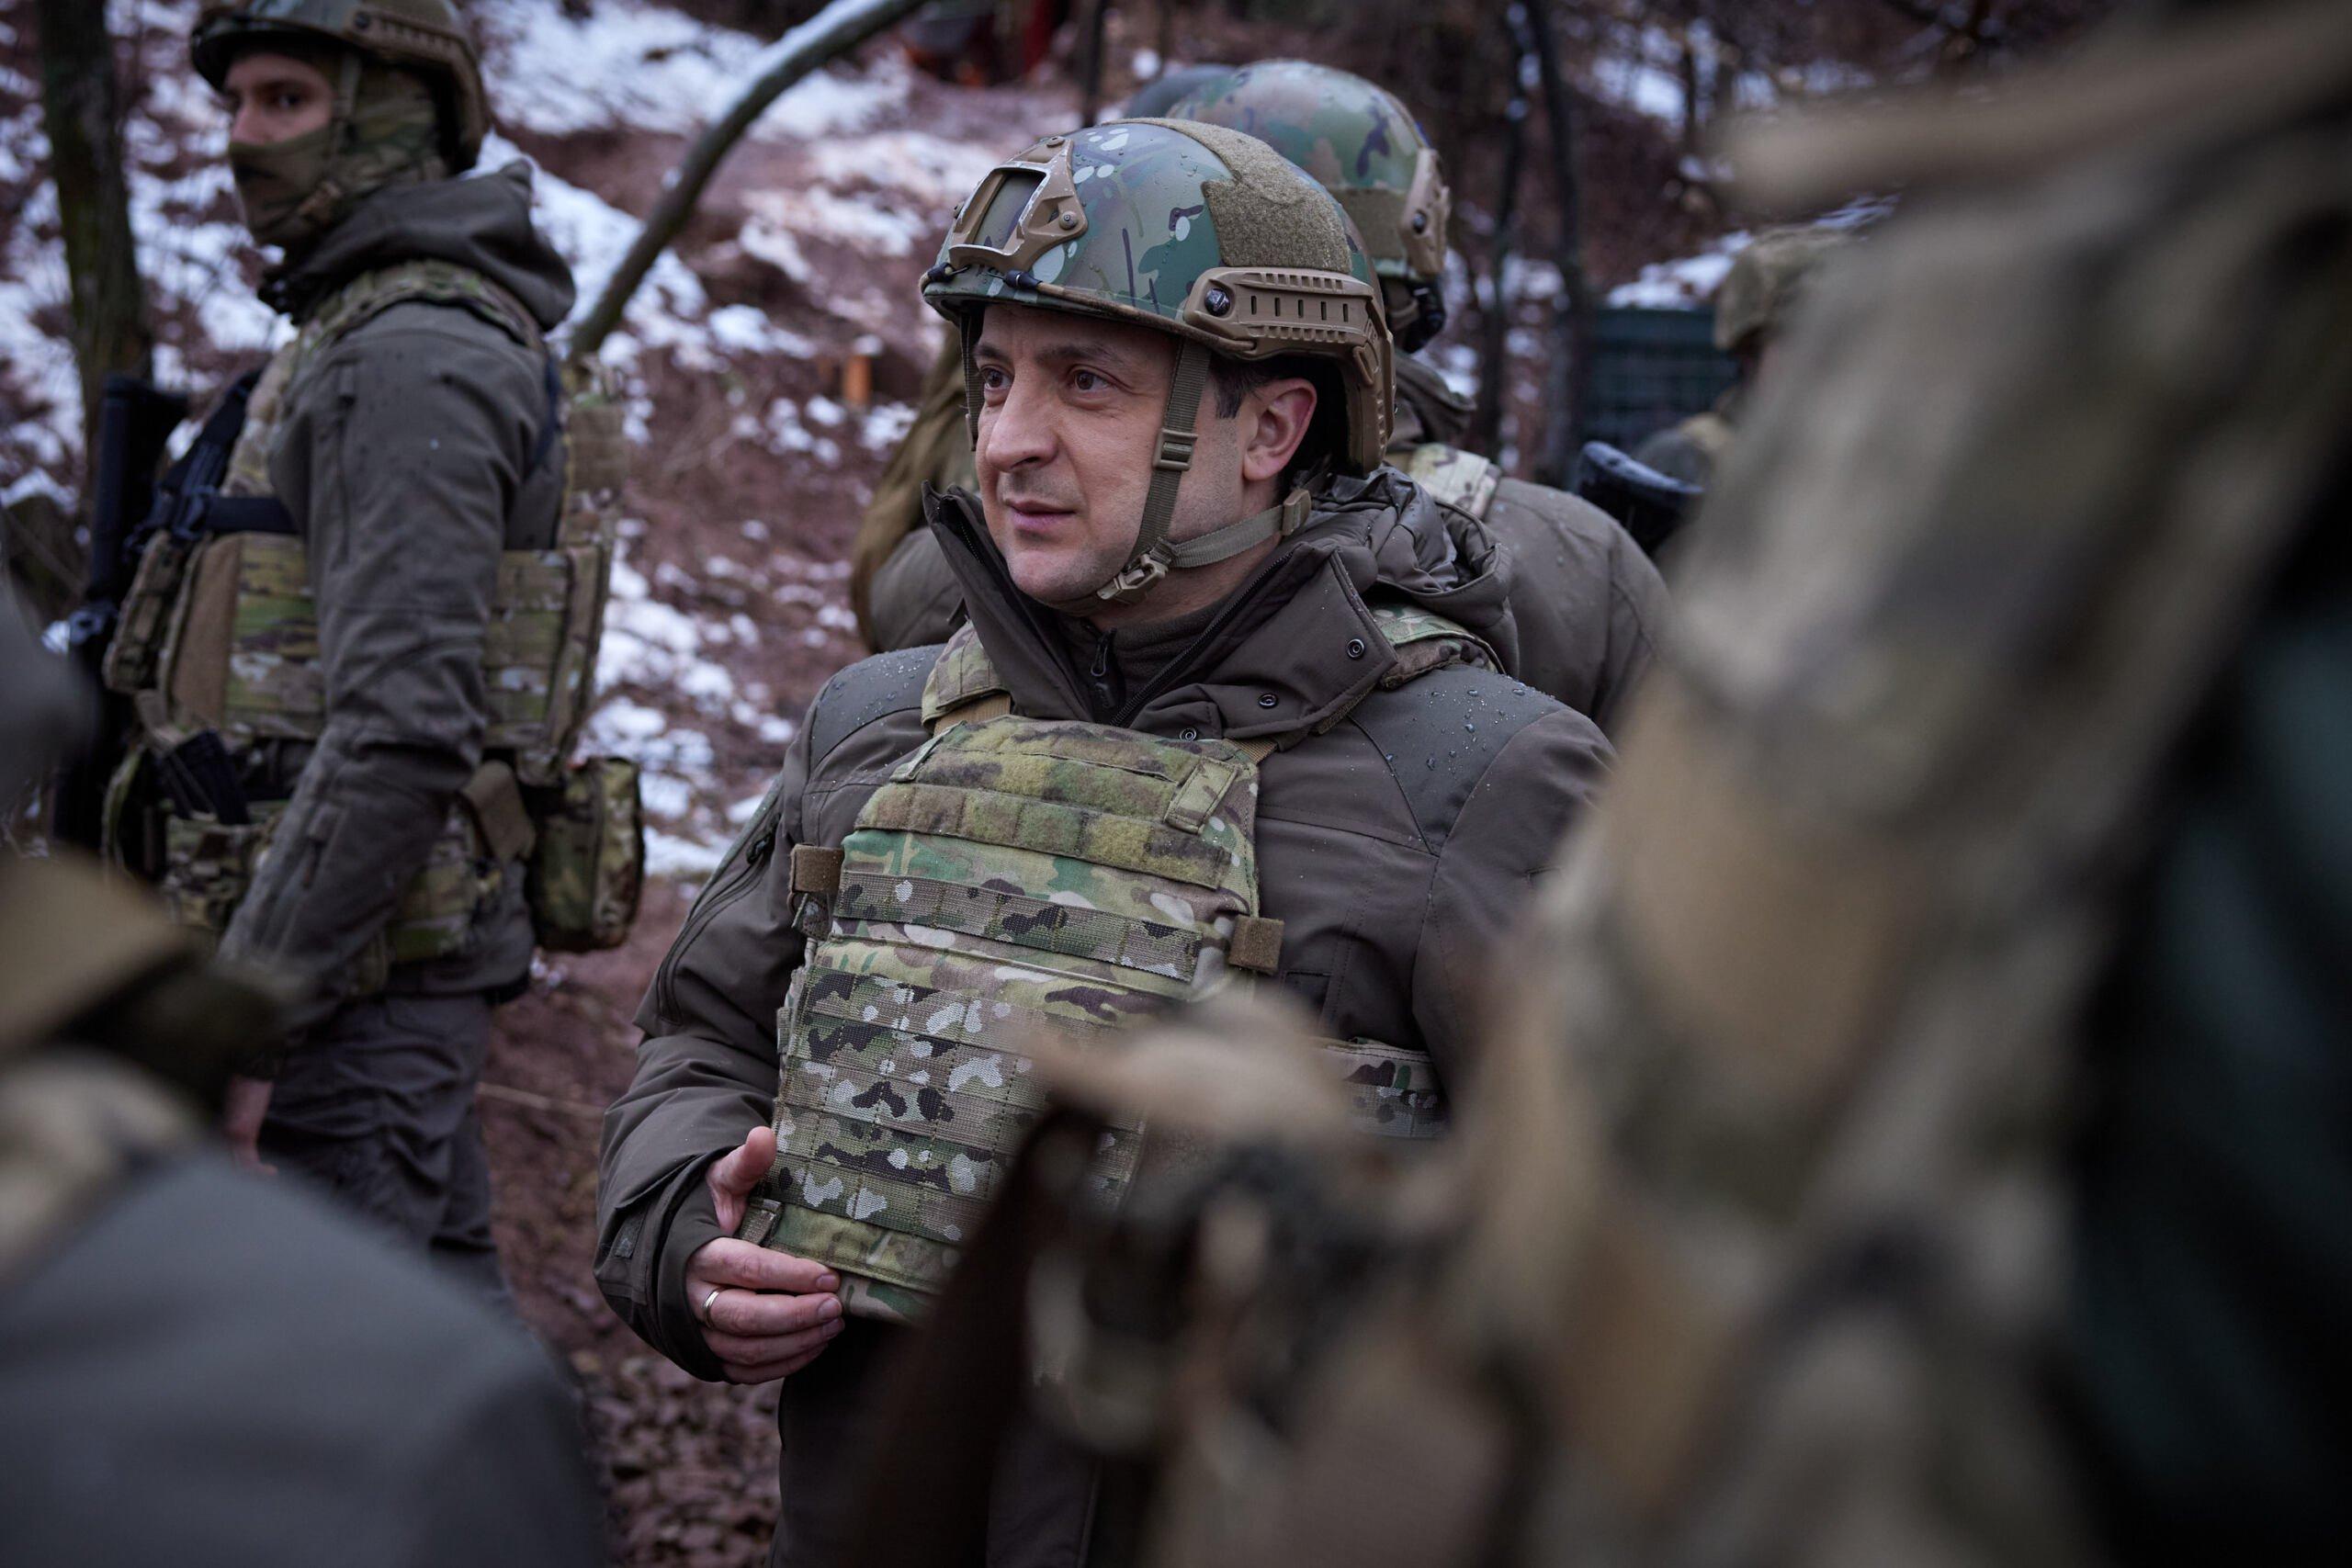 Prezydent Zełenski w mundurze i hełmie wizytuje oddziały wojskowe w Donbasie